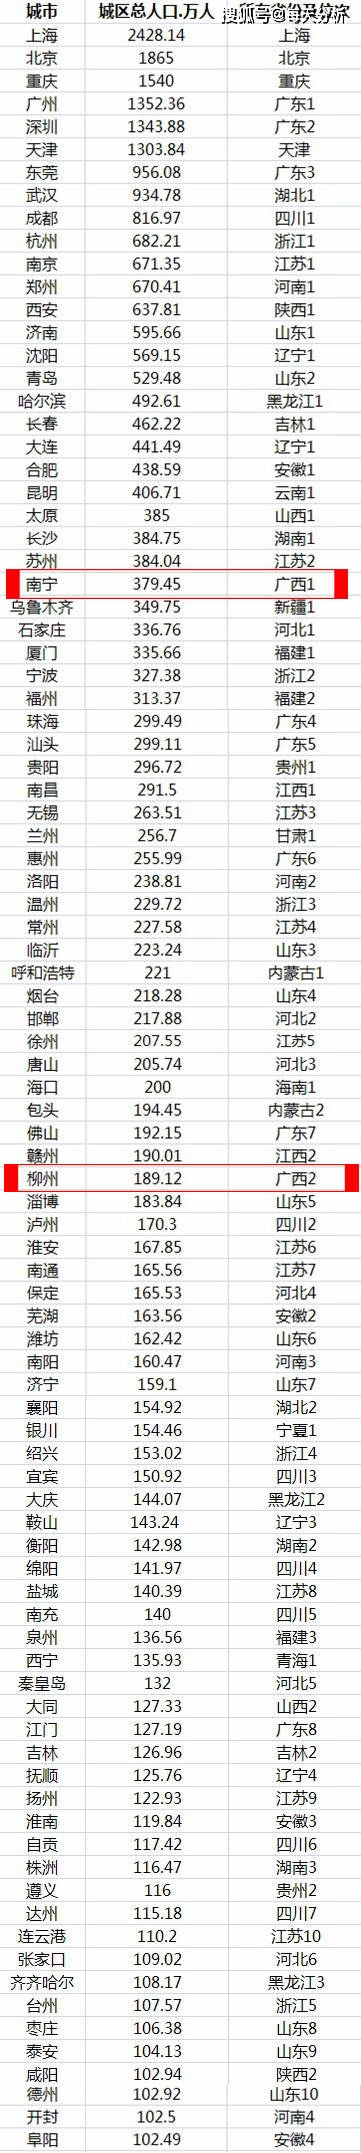 南宁市区人口2018_广西14市常住人口10年增长变化:南宁增幅最快,2市不增反减